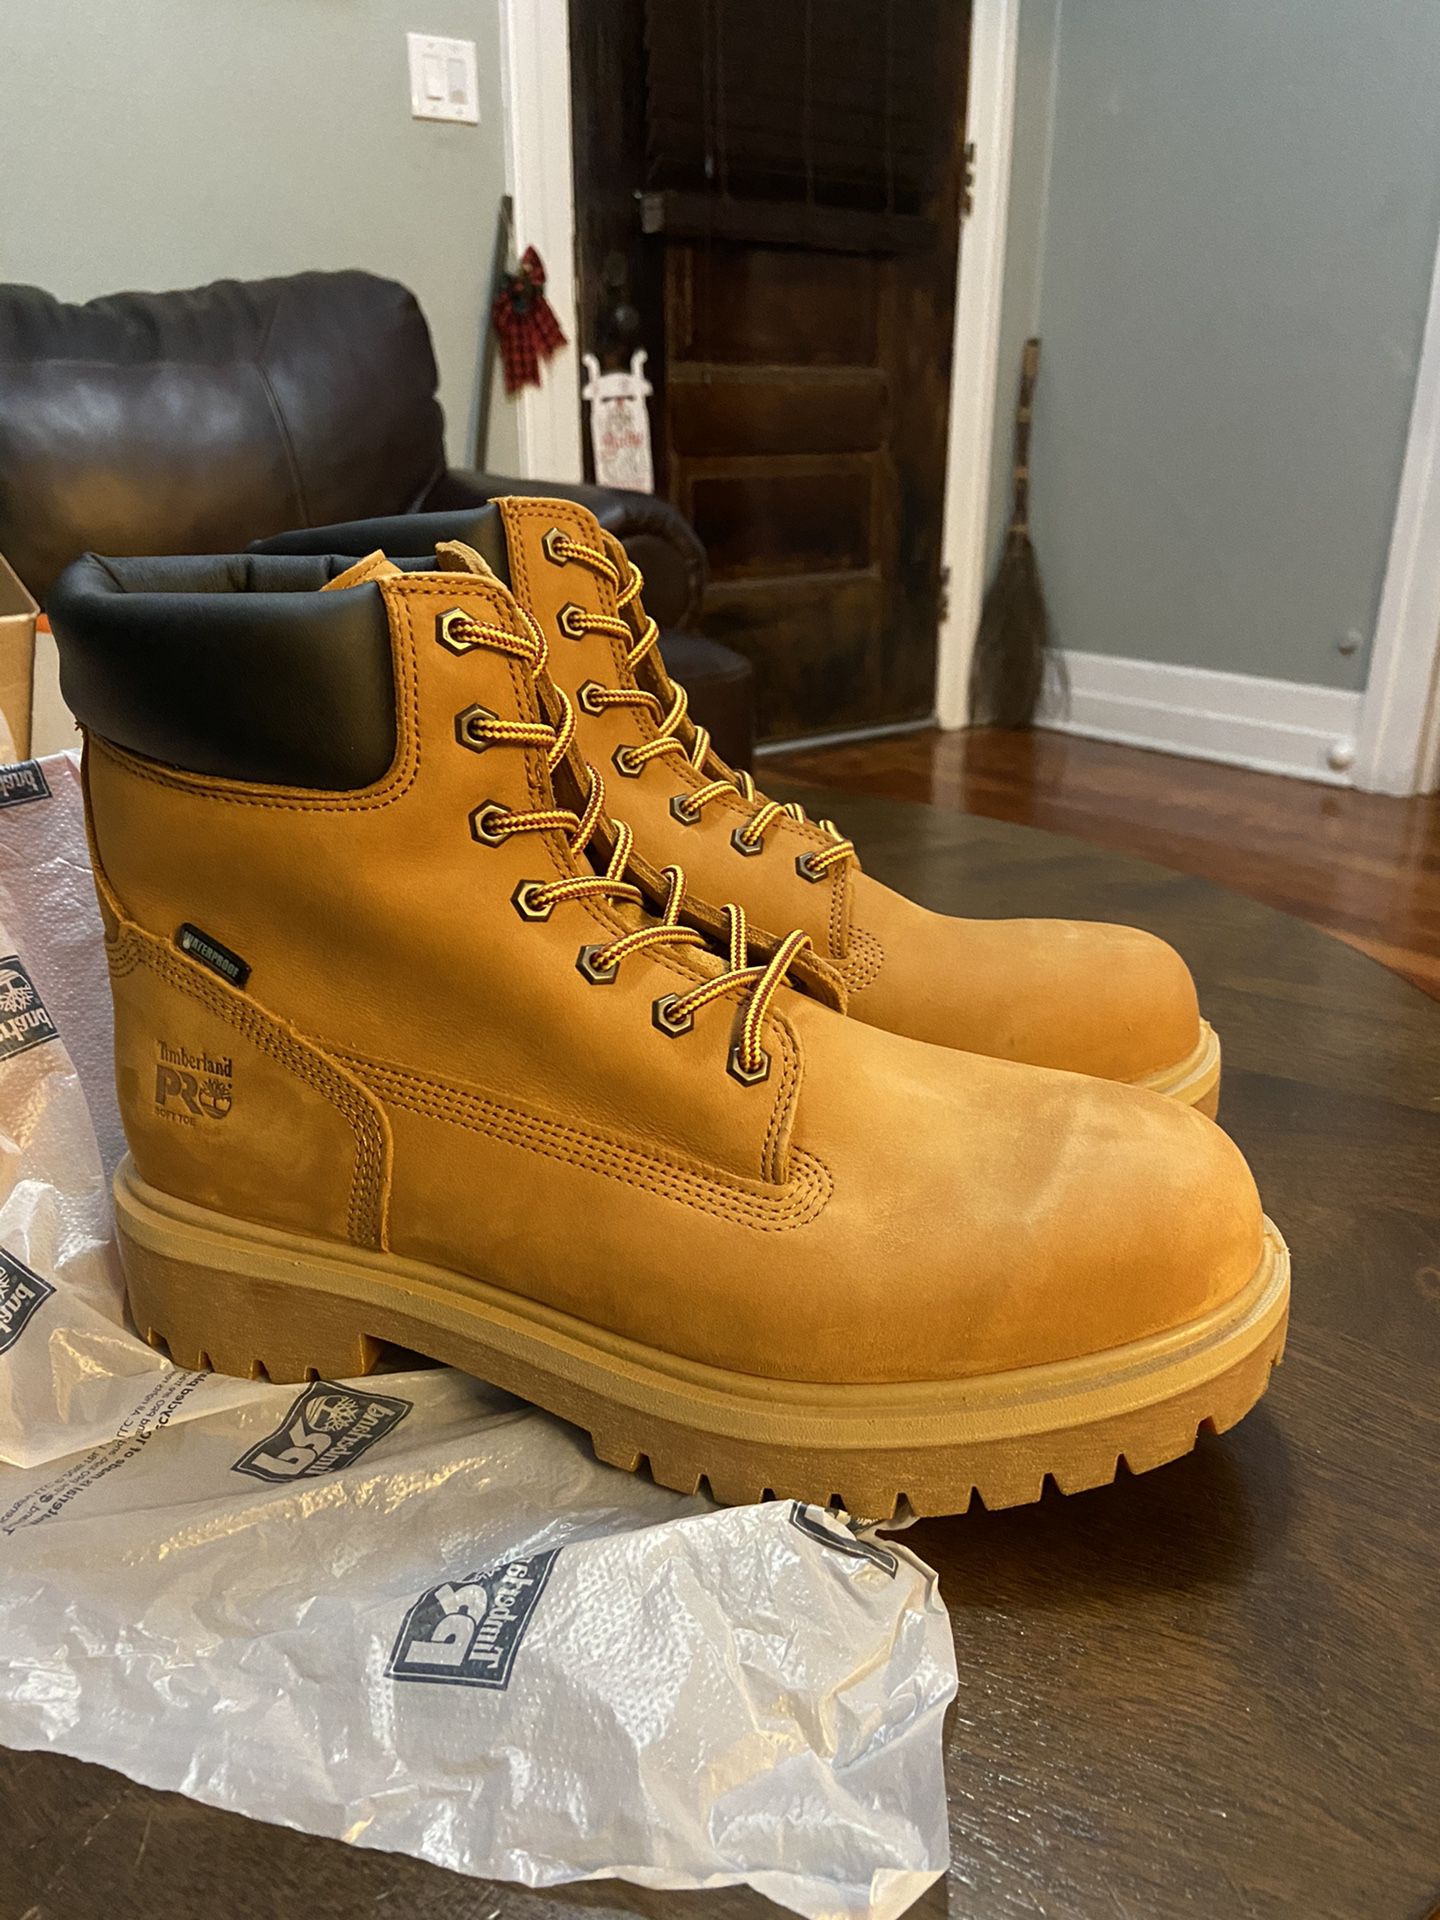 Timberland 6” soft toe waterproof boots size 11